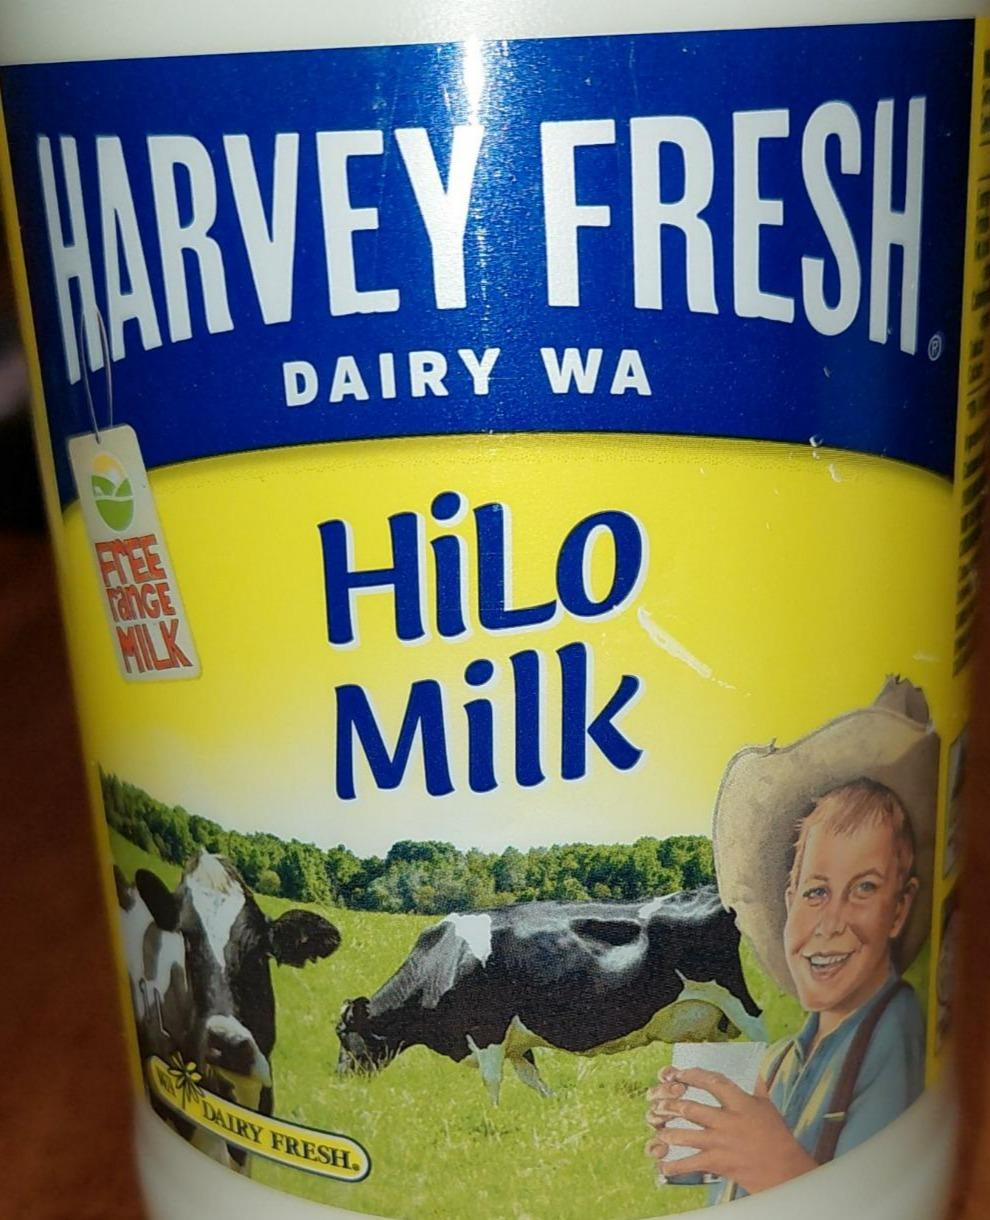 Fotografie - Hilo Milk Harvey fresh